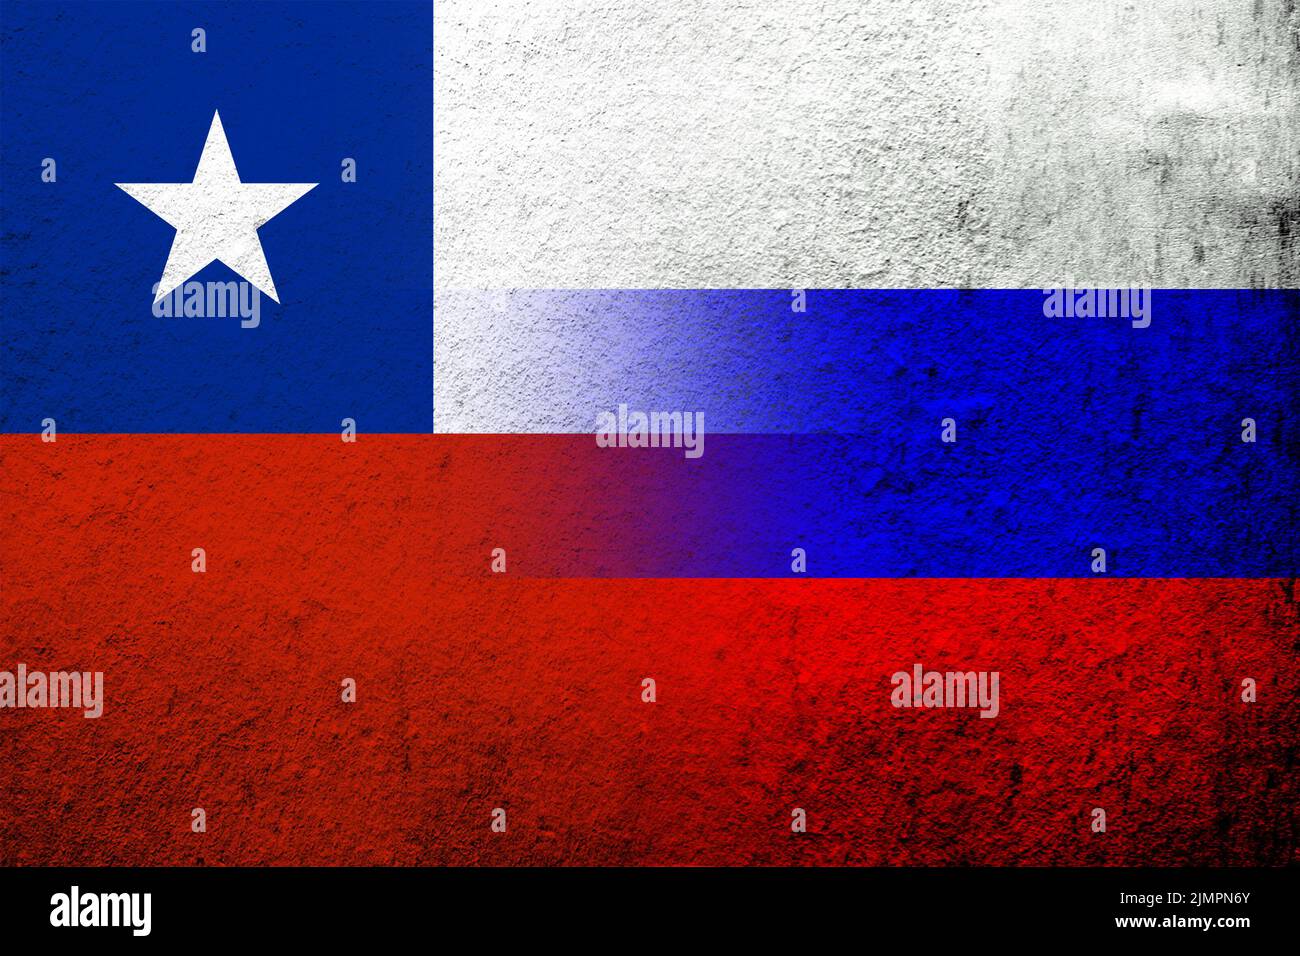 Drapeau national de la Fédération de Russie avec la République du Chili drapeau national. Grunge l'arrière-plan Banque D'Images